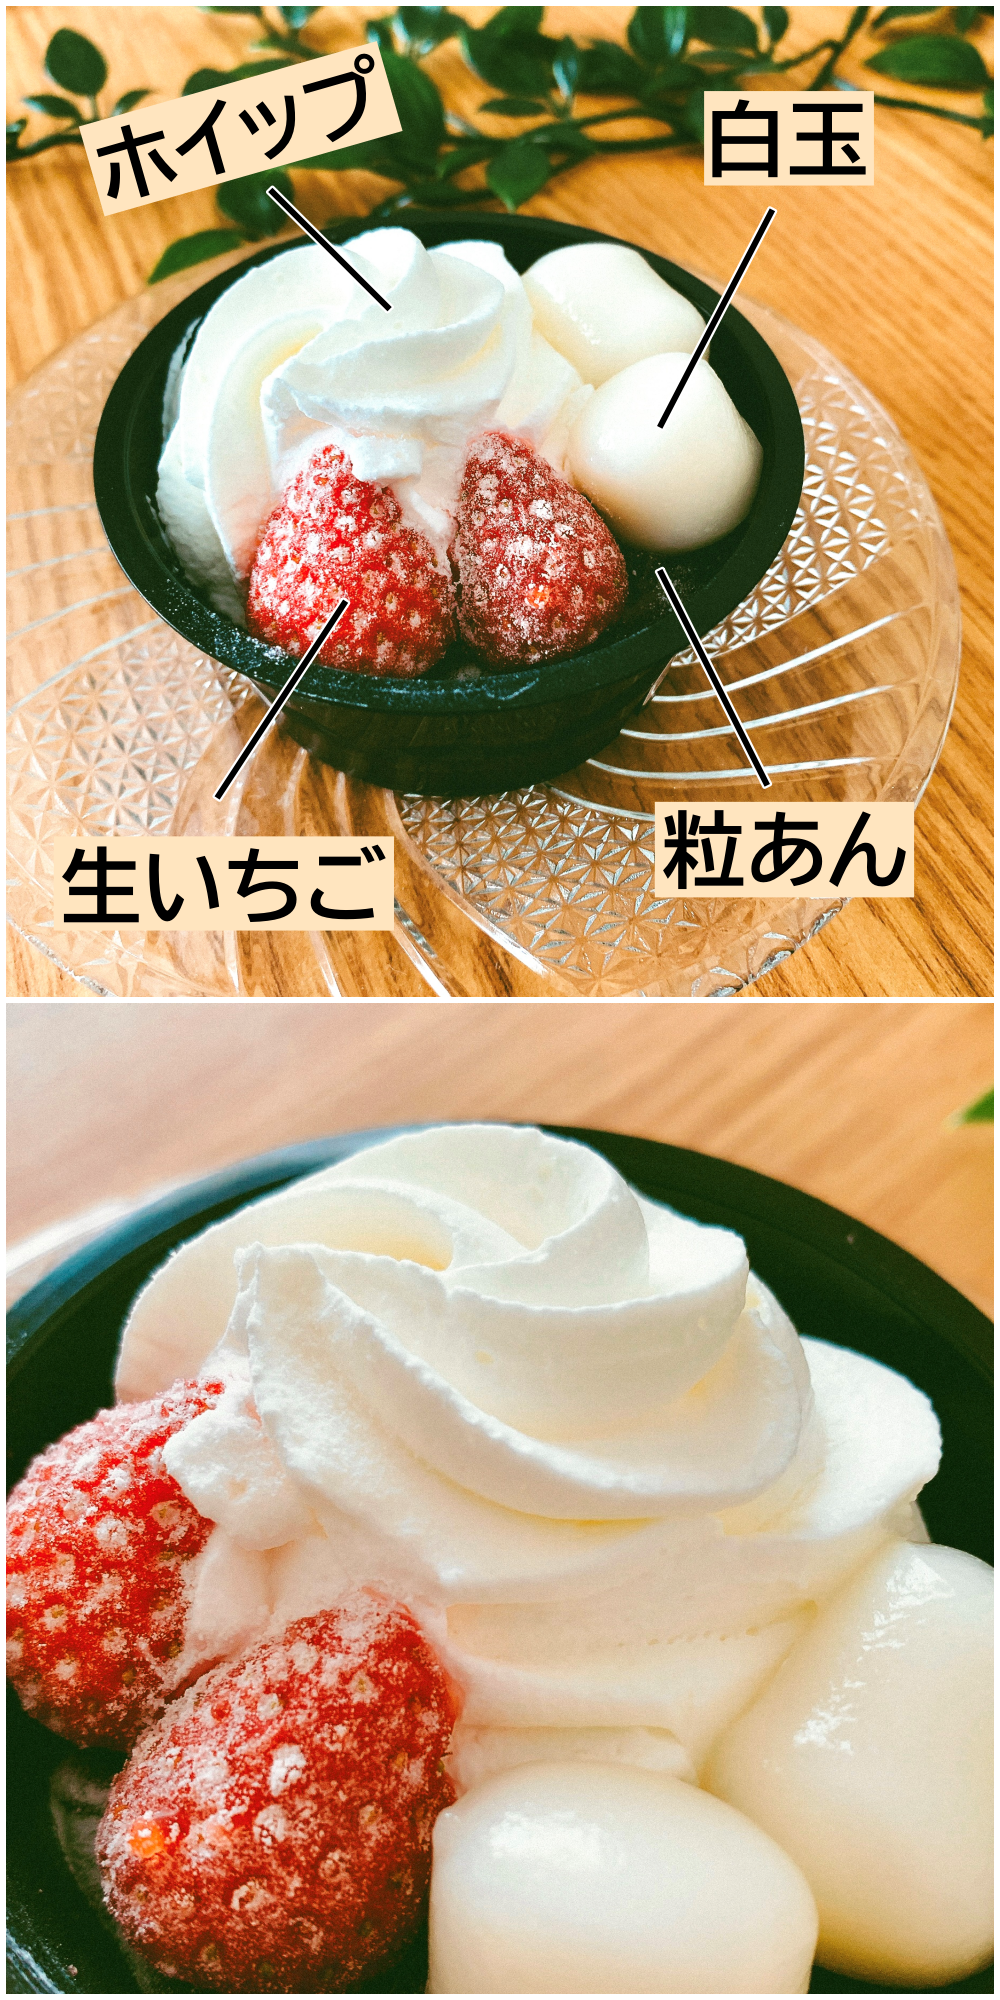 イチゴと白玉にホイップクリームが乗ったデザートが写っています。